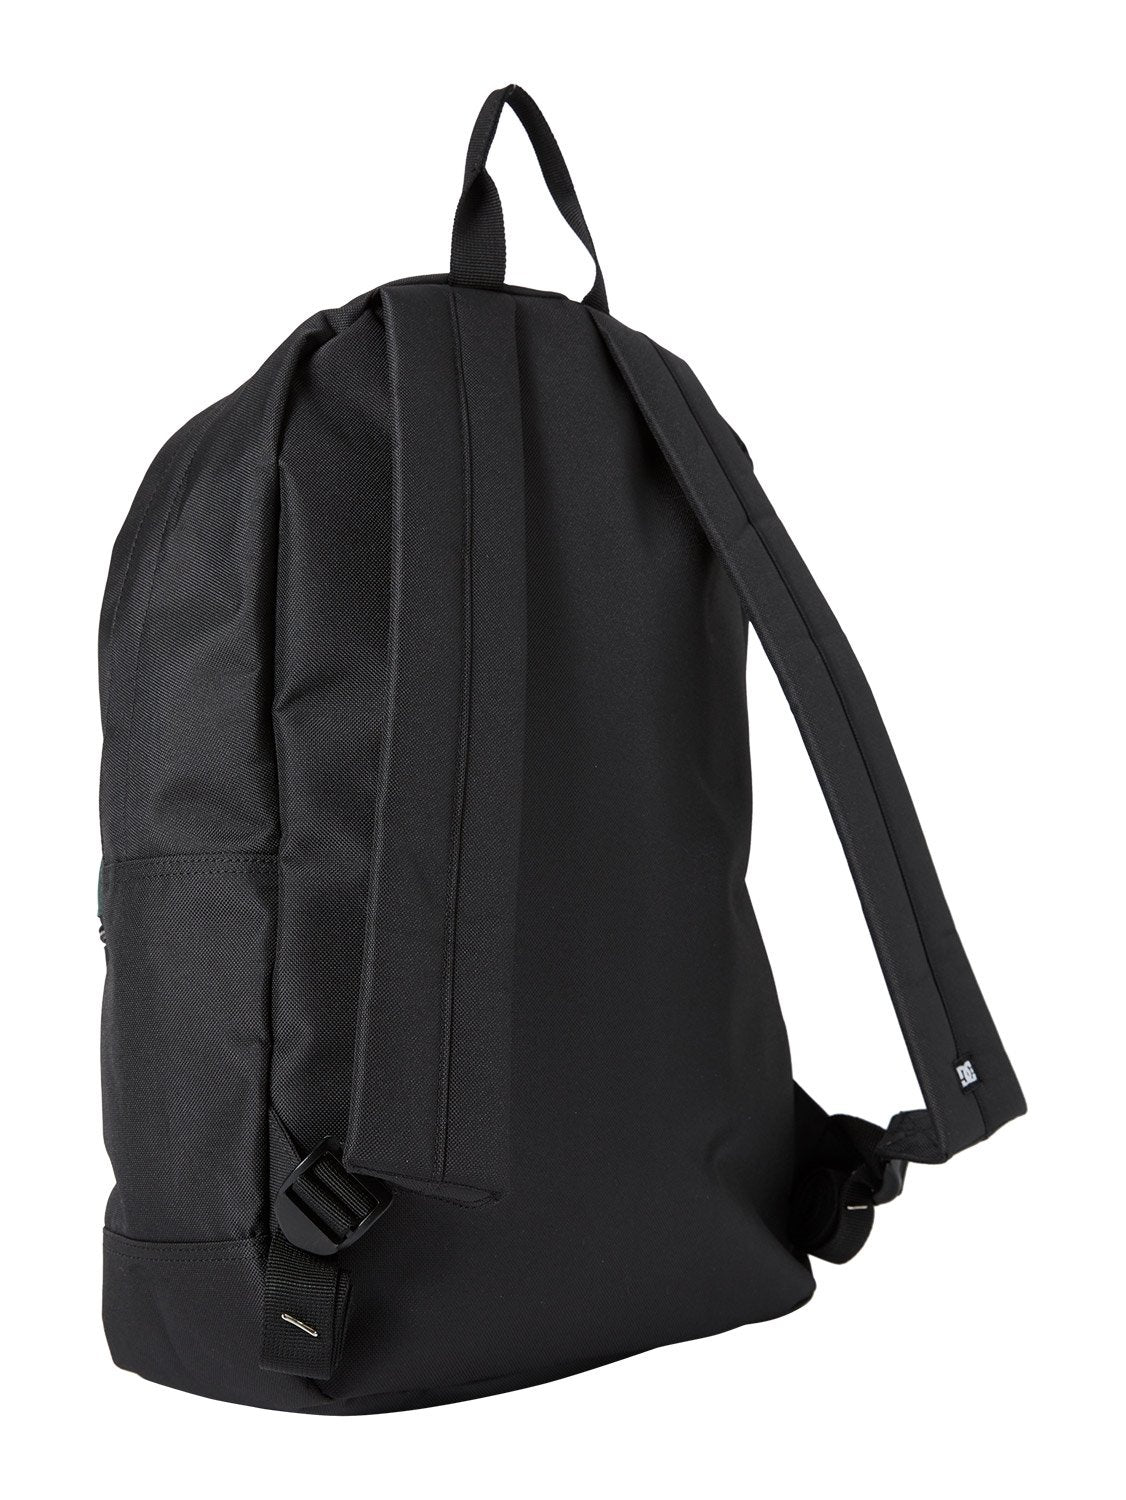 DC Men's Nickel Bag 3 20L Backpack